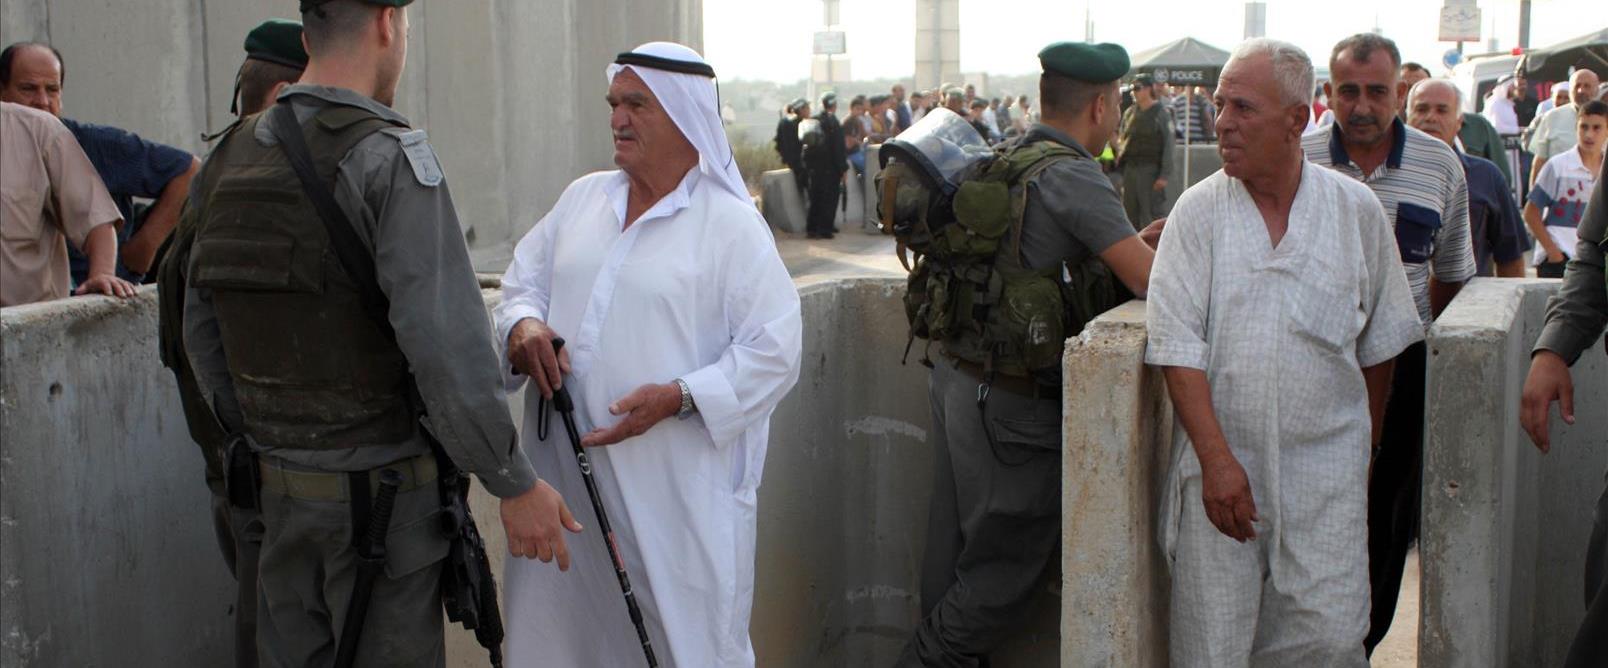 פלסטינים במחסום קלנדיה ביהודה ושומרון, 2010